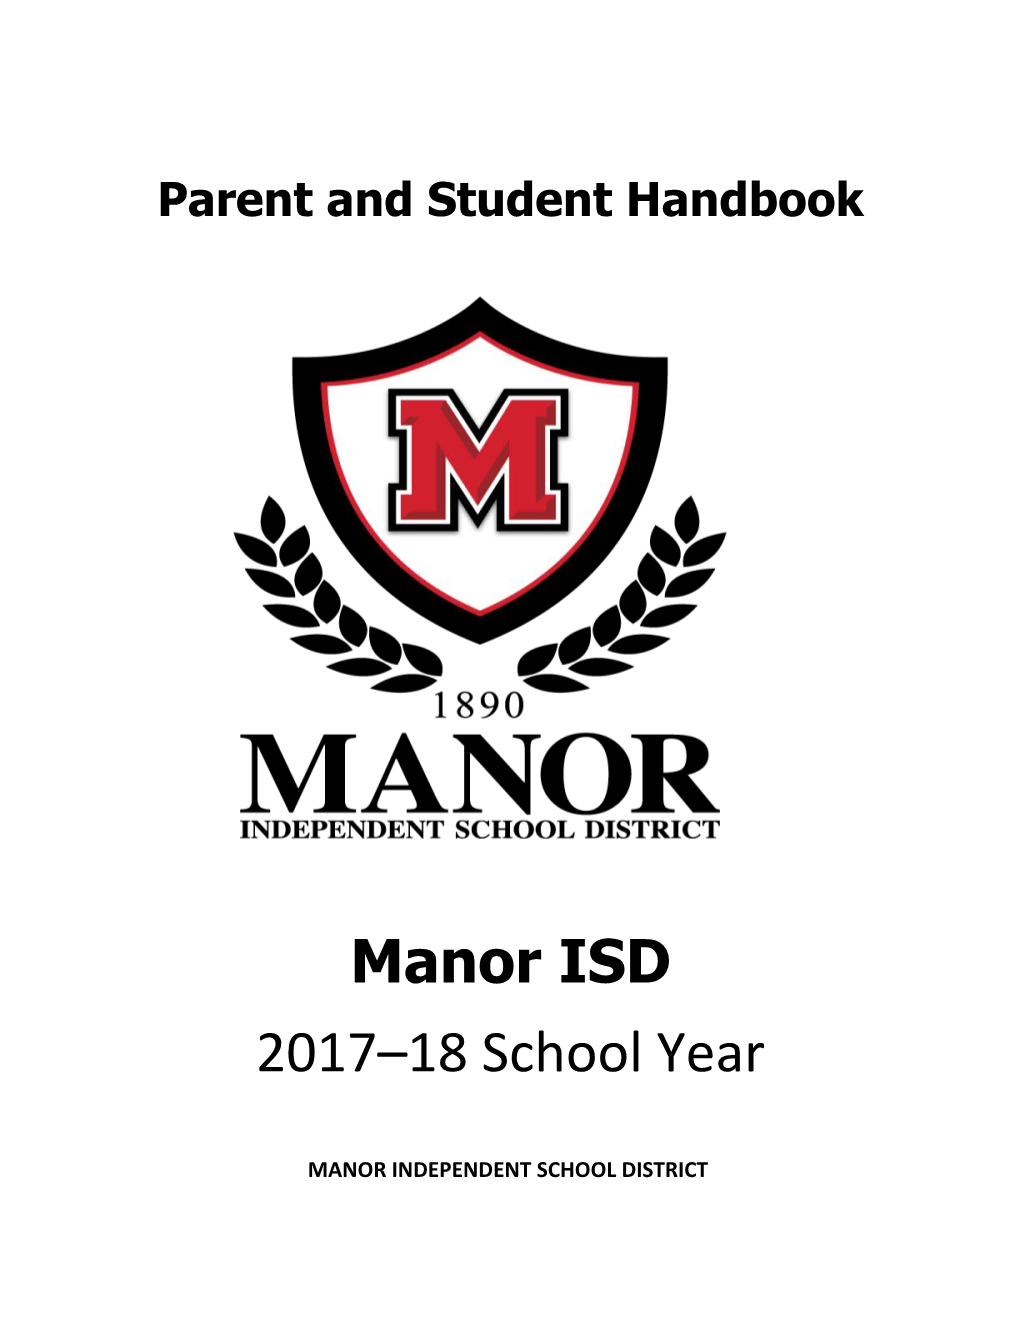 Your School's Name Student Handbook